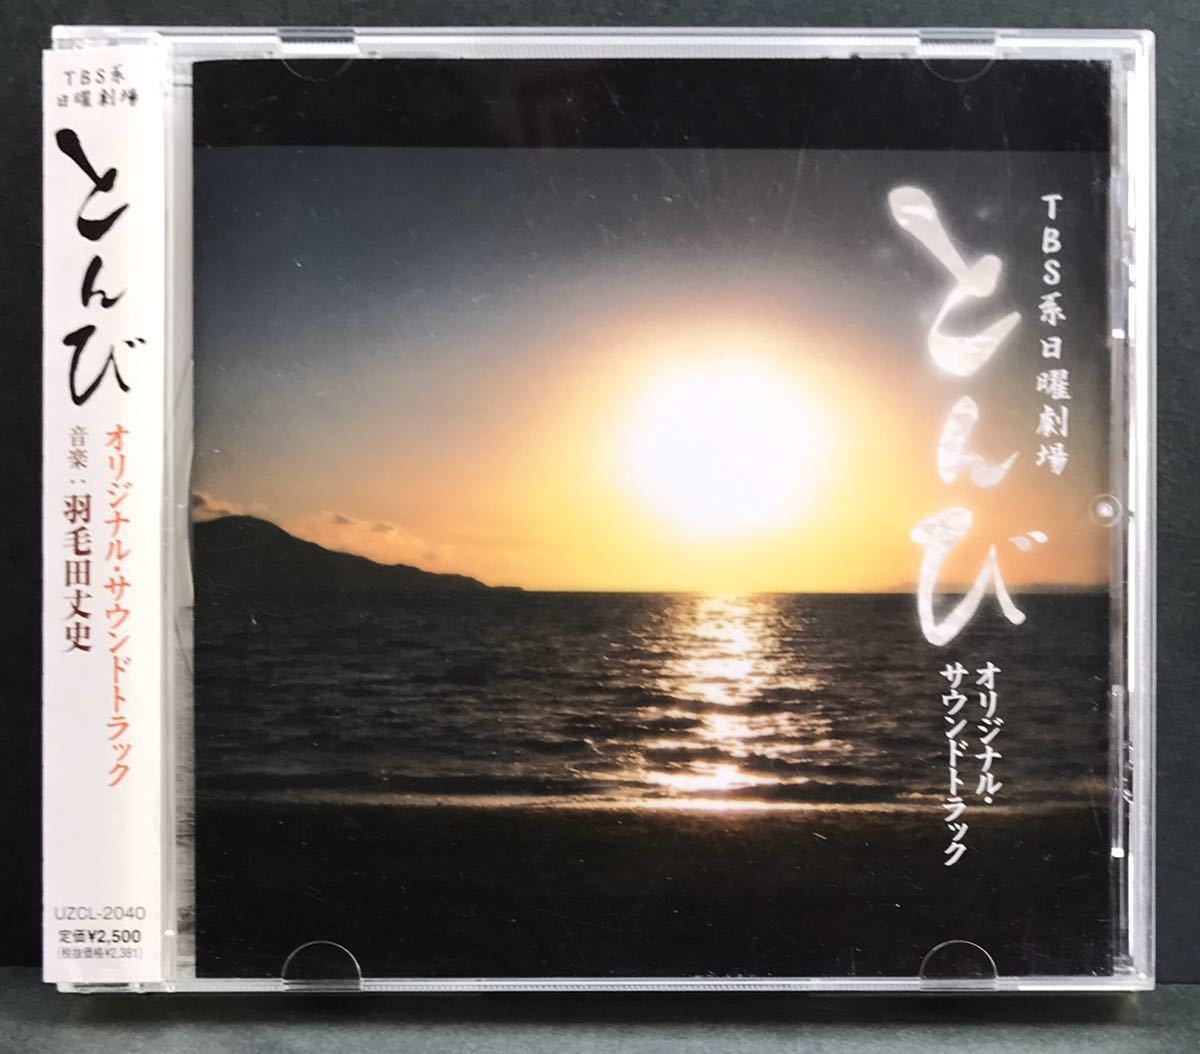  soundtrack CD*[...]TBS Sunday theater * obi attaching soundtrack inside ... Sato .